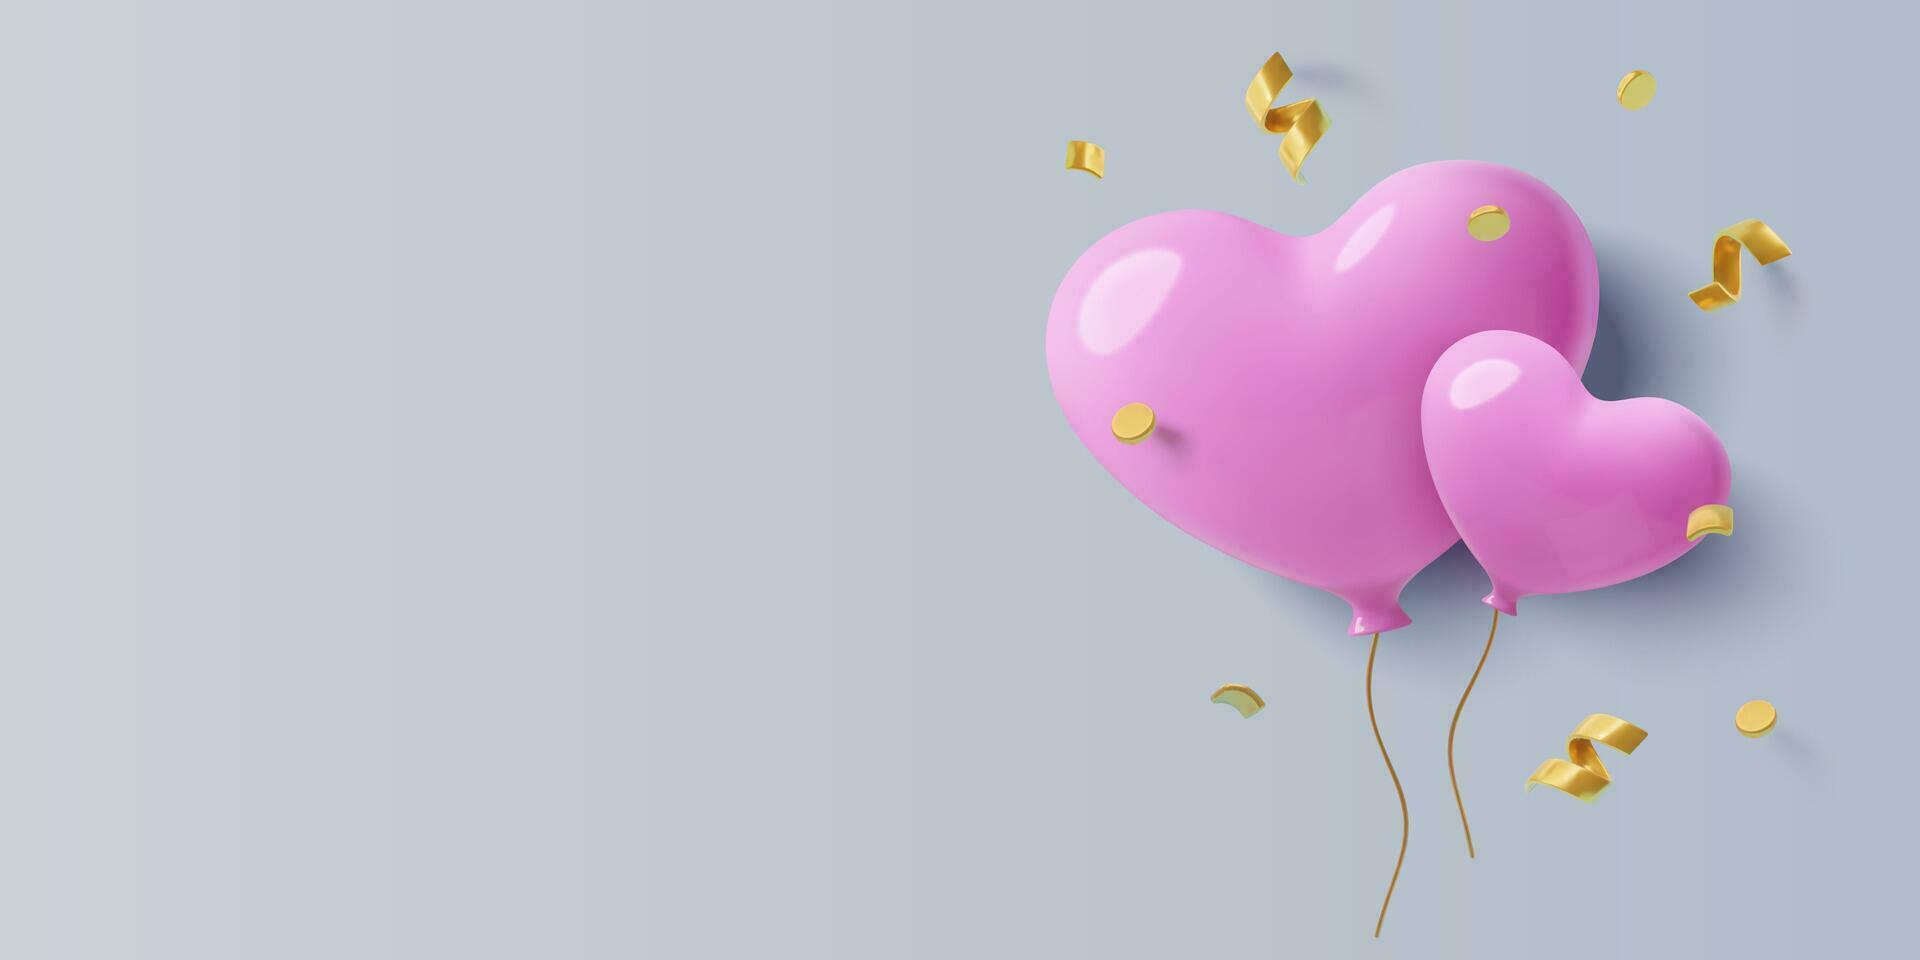 Februar 14 Hintergrund mit Pastell- Rosa 3d Herz Luftballons, golden Konfetti und Kopieren Raum. realistisch drei dimensional Valentinstag Tag Design zum Party Banner und Einladungen. Vektor Illustration.